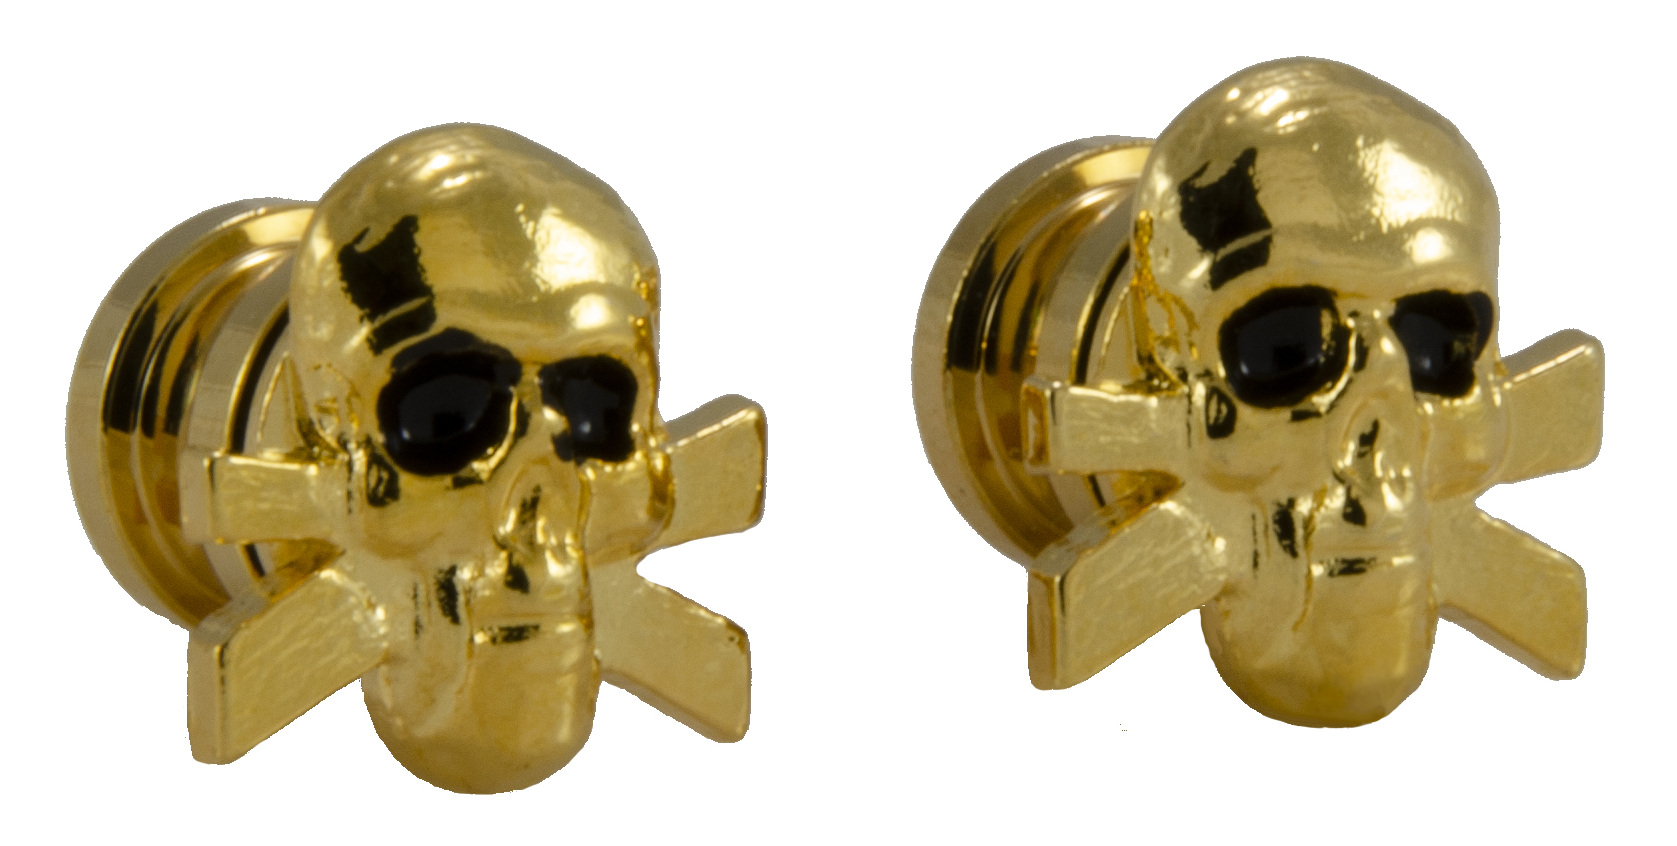 Grover S 610G - Artist Strap Buttons, Skull - Gold